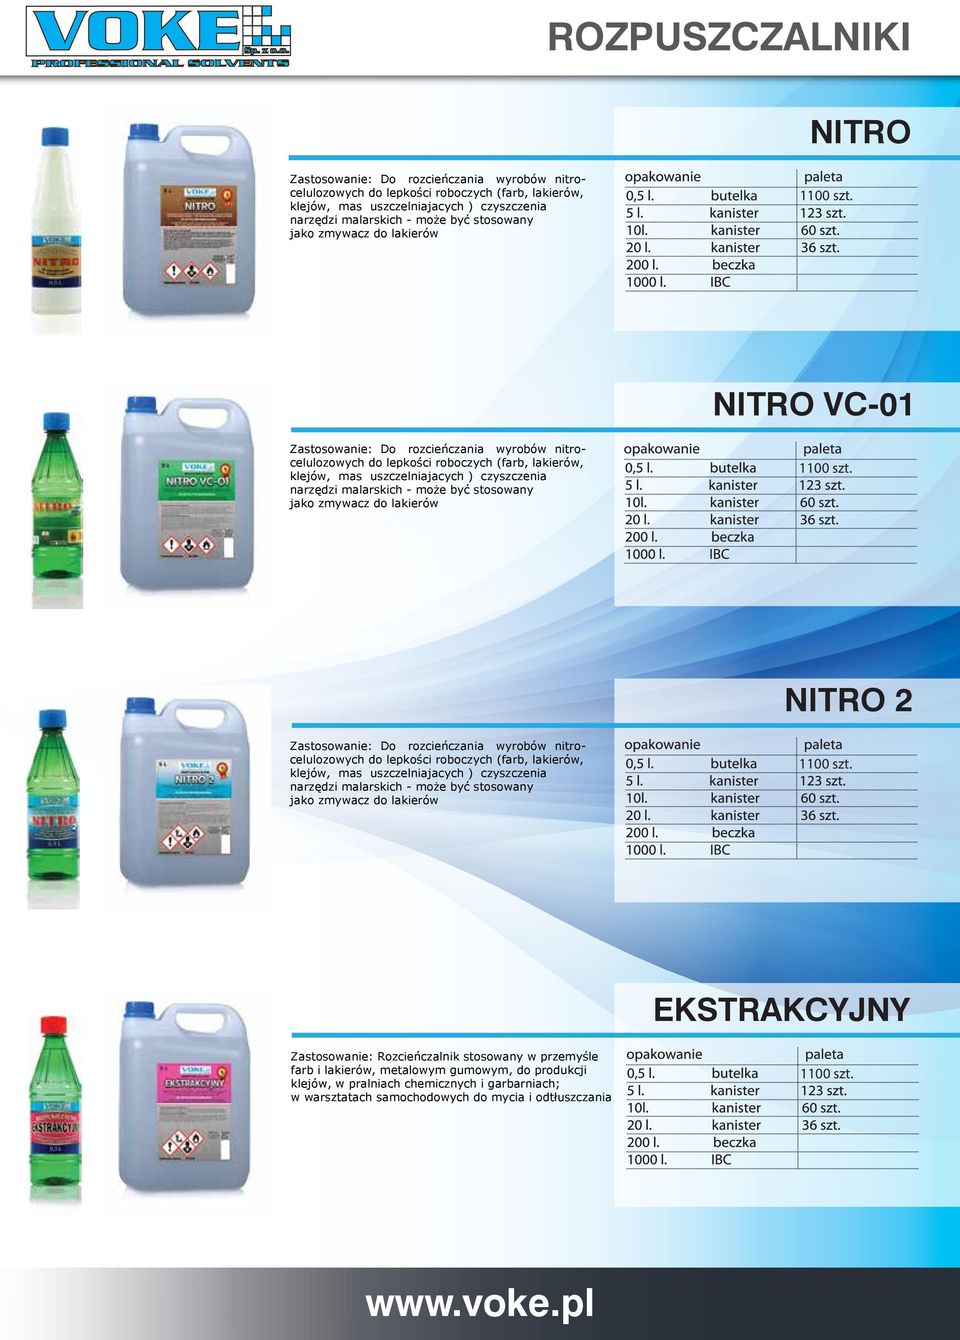 stosowany jako zmywacz do lakierów NITRO 2 Zastosowanie: Do rozcieńczania wyrobów nitrocelulozowych do lepkości roboczych (farb, lakierów, klejów, mas uszczelniajacych ) czyszczenia narzędzi